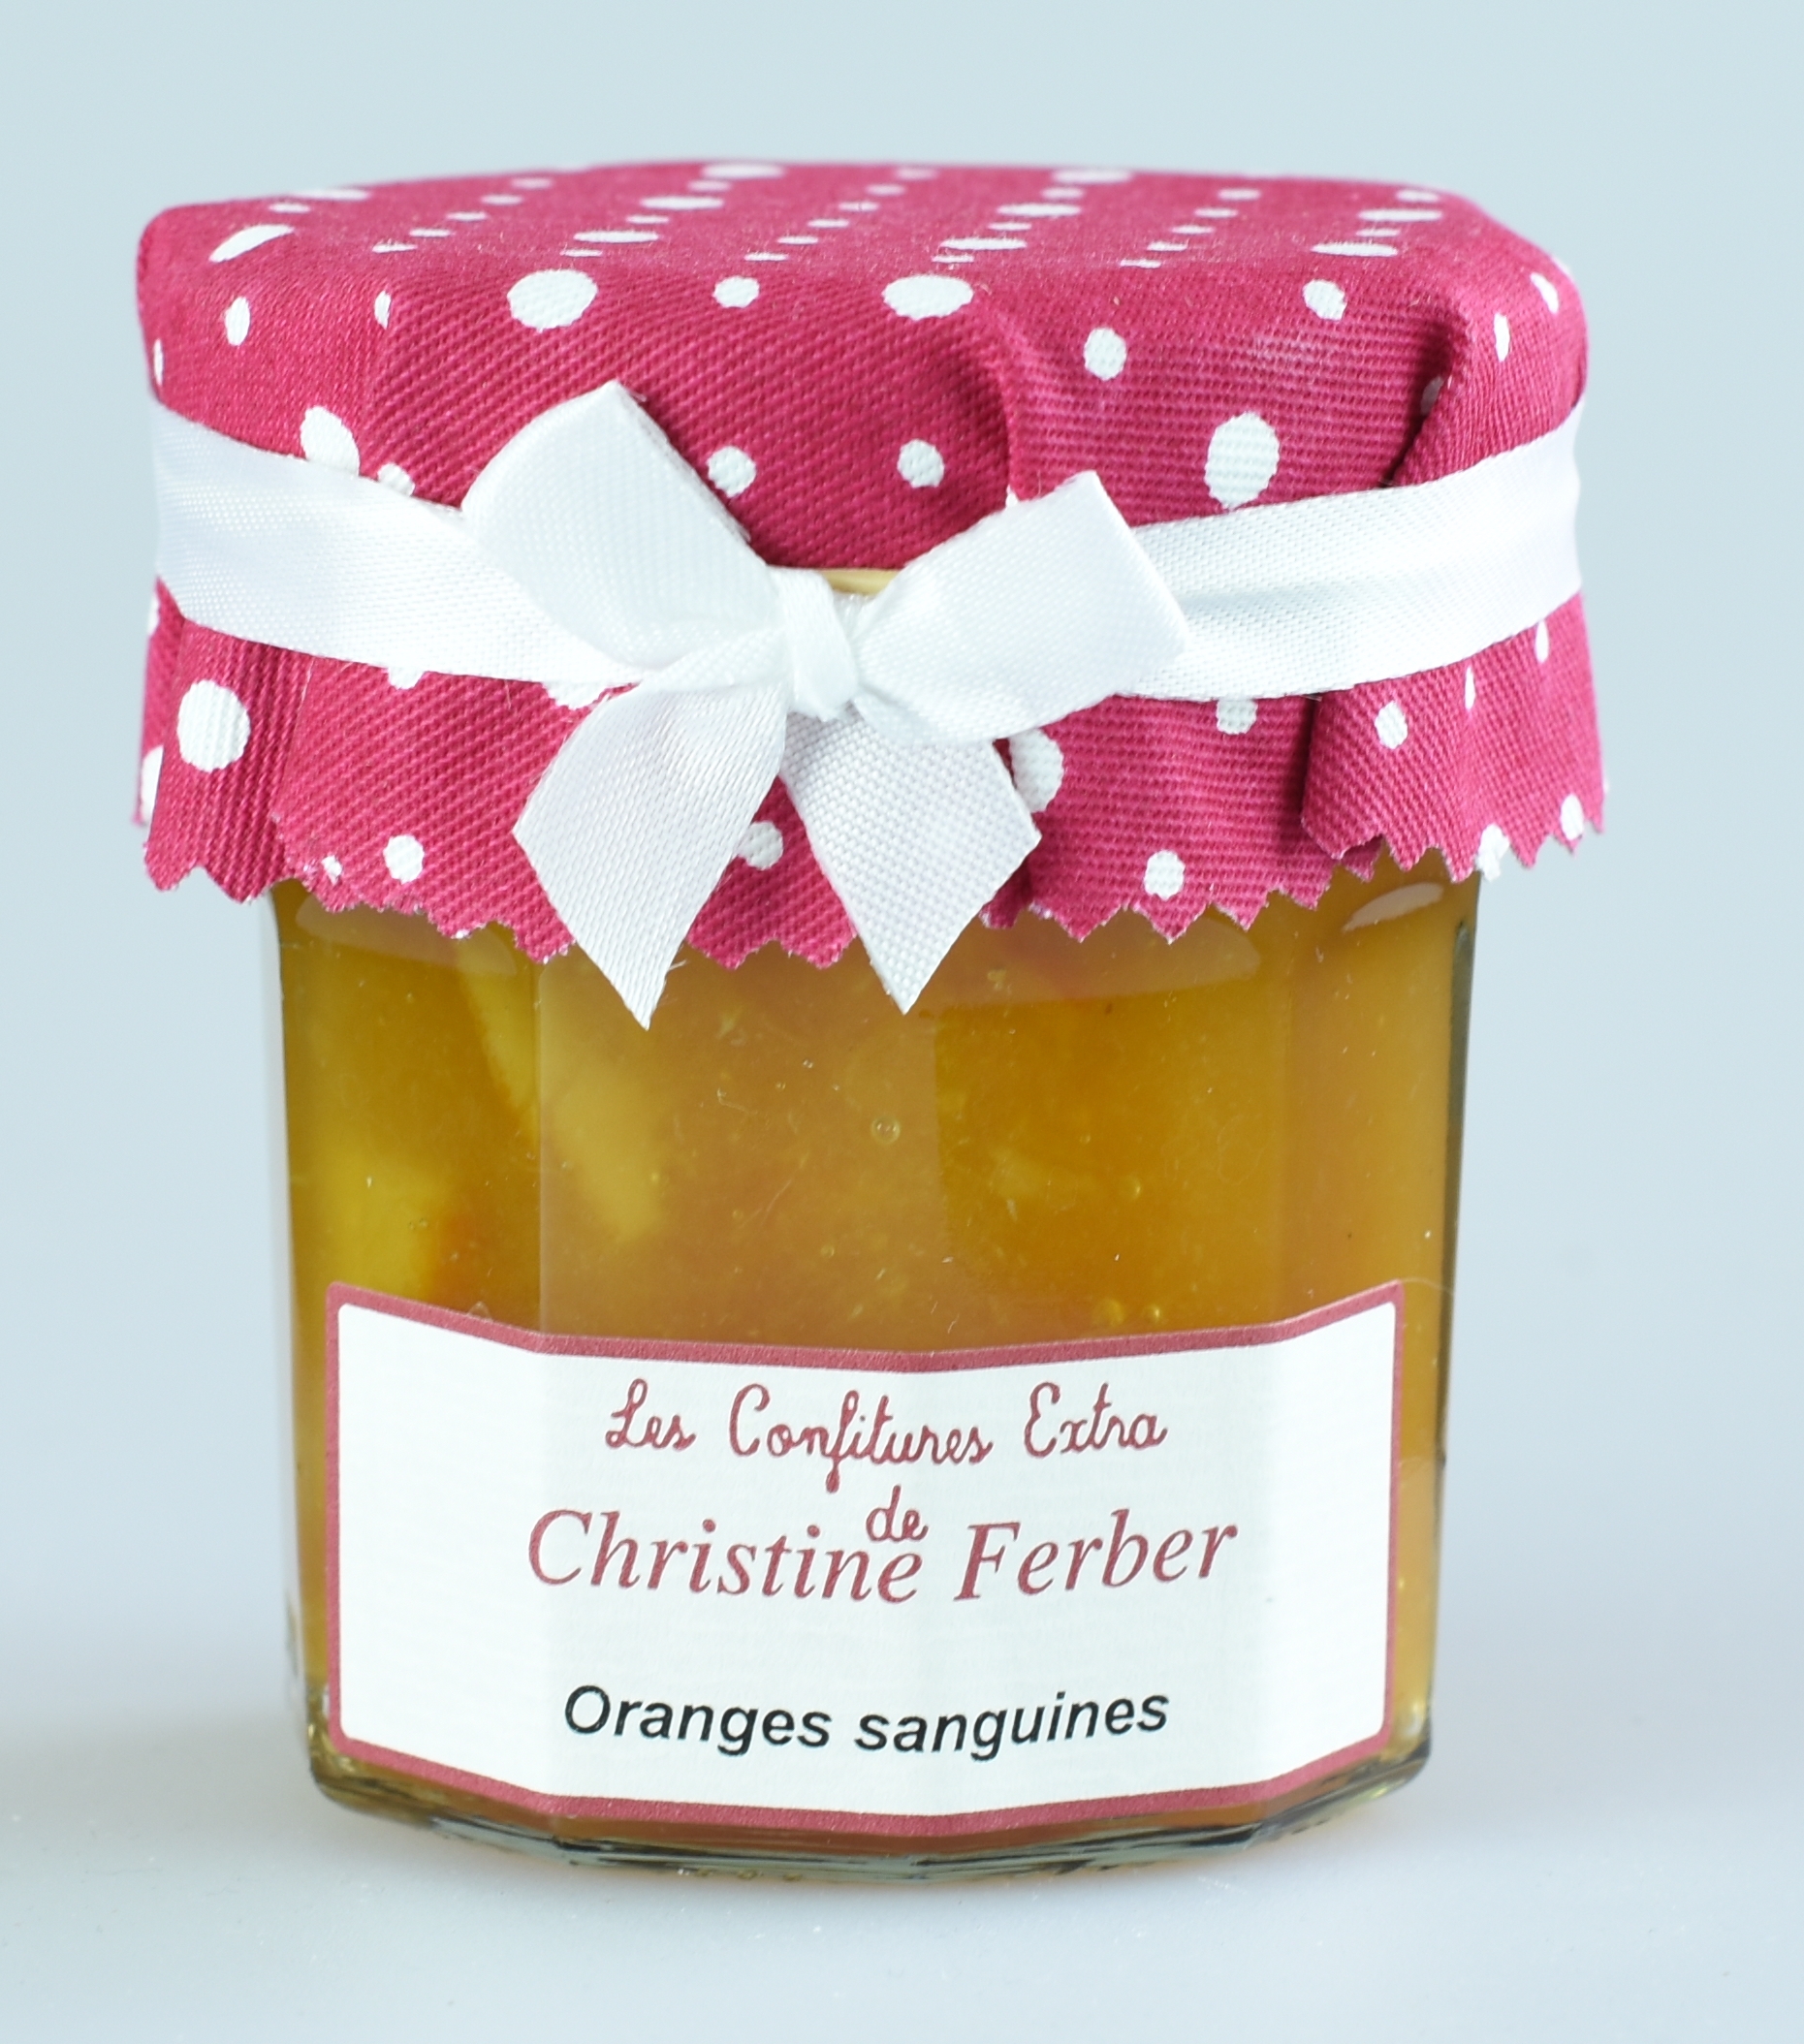 Blutorange mit Fruchtstücke, Marmelade est morceaux, Oranges Sanguine, Christine Ferber 0,22 kg